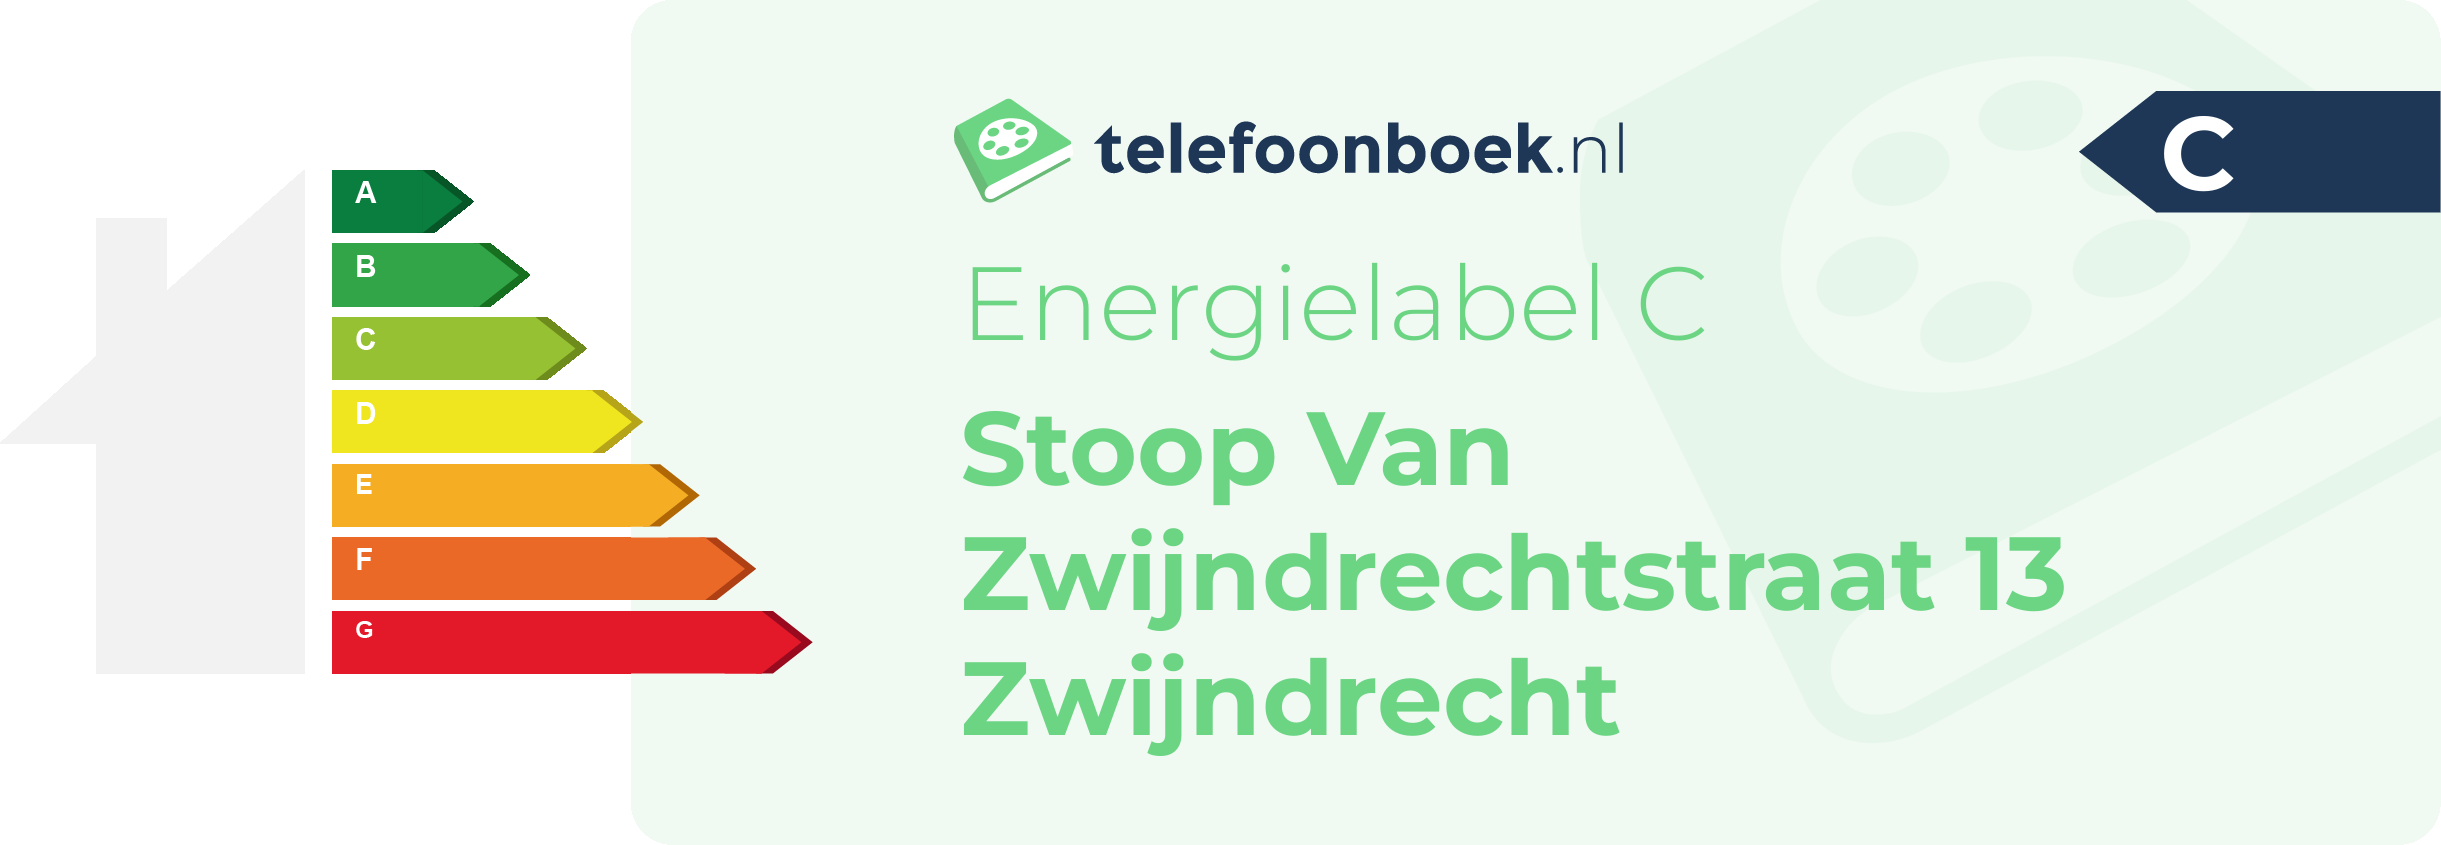 Energielabel Stoop Van Zwijndrechtstraat 13 Zwijndrecht